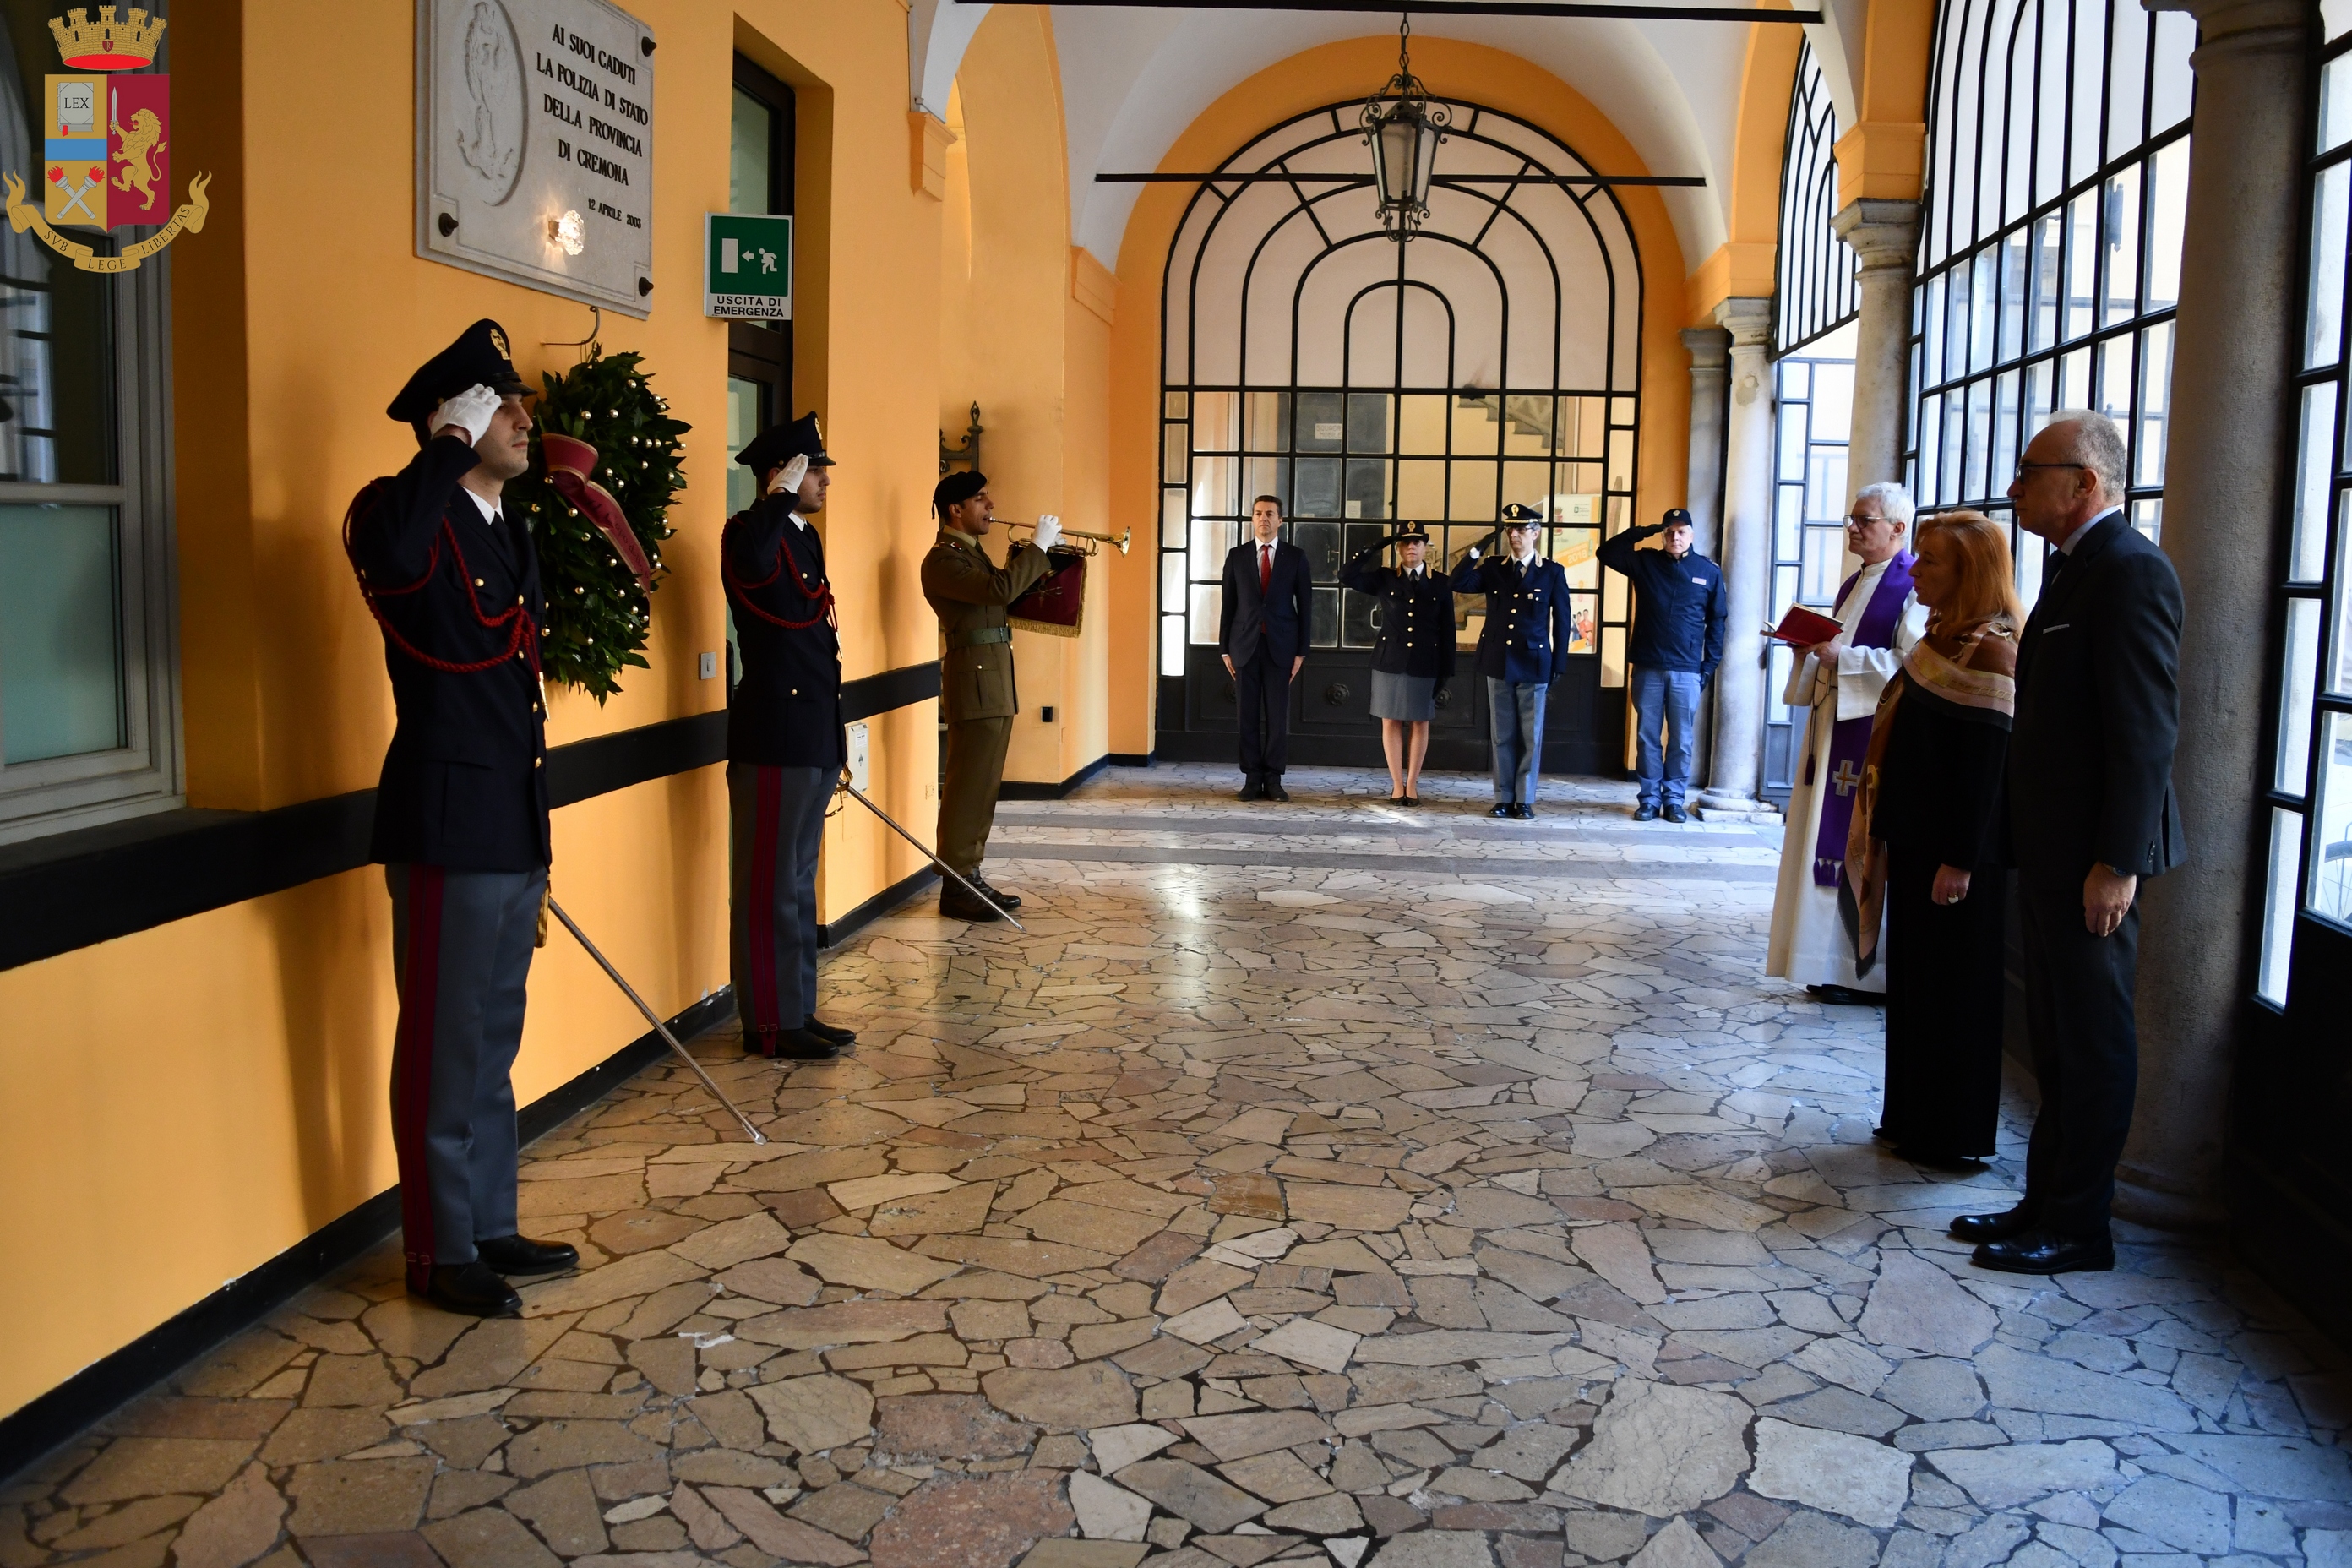 Le celebrazioni del 168° anniversario della fondazione della Polizia a Cremona